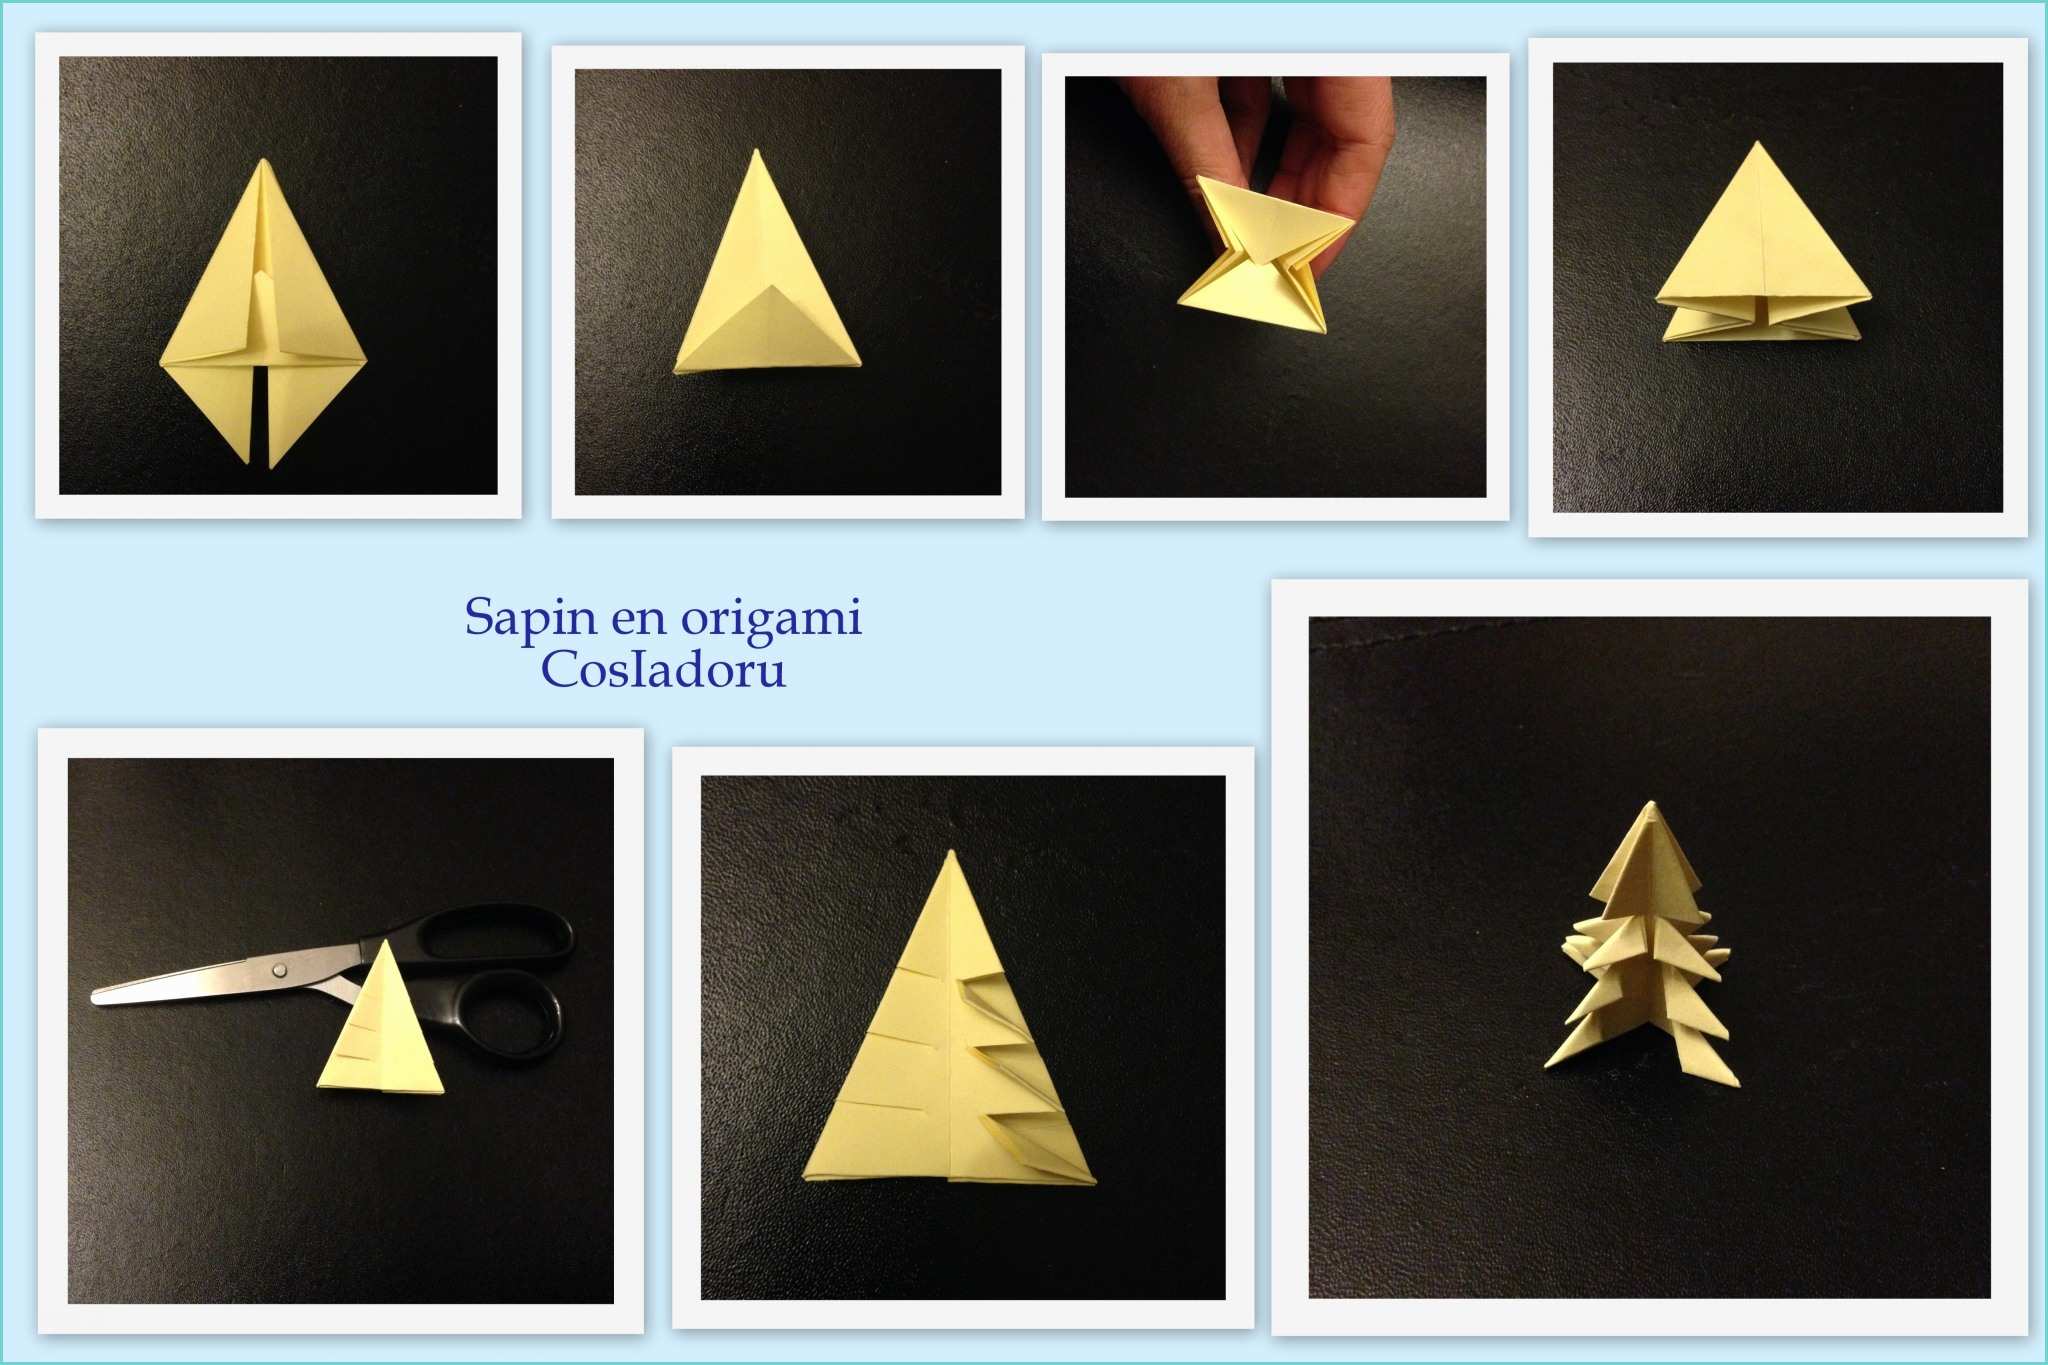 Origami De Noel A Fabriquer Sapin De Noël En origami Cosiadoru